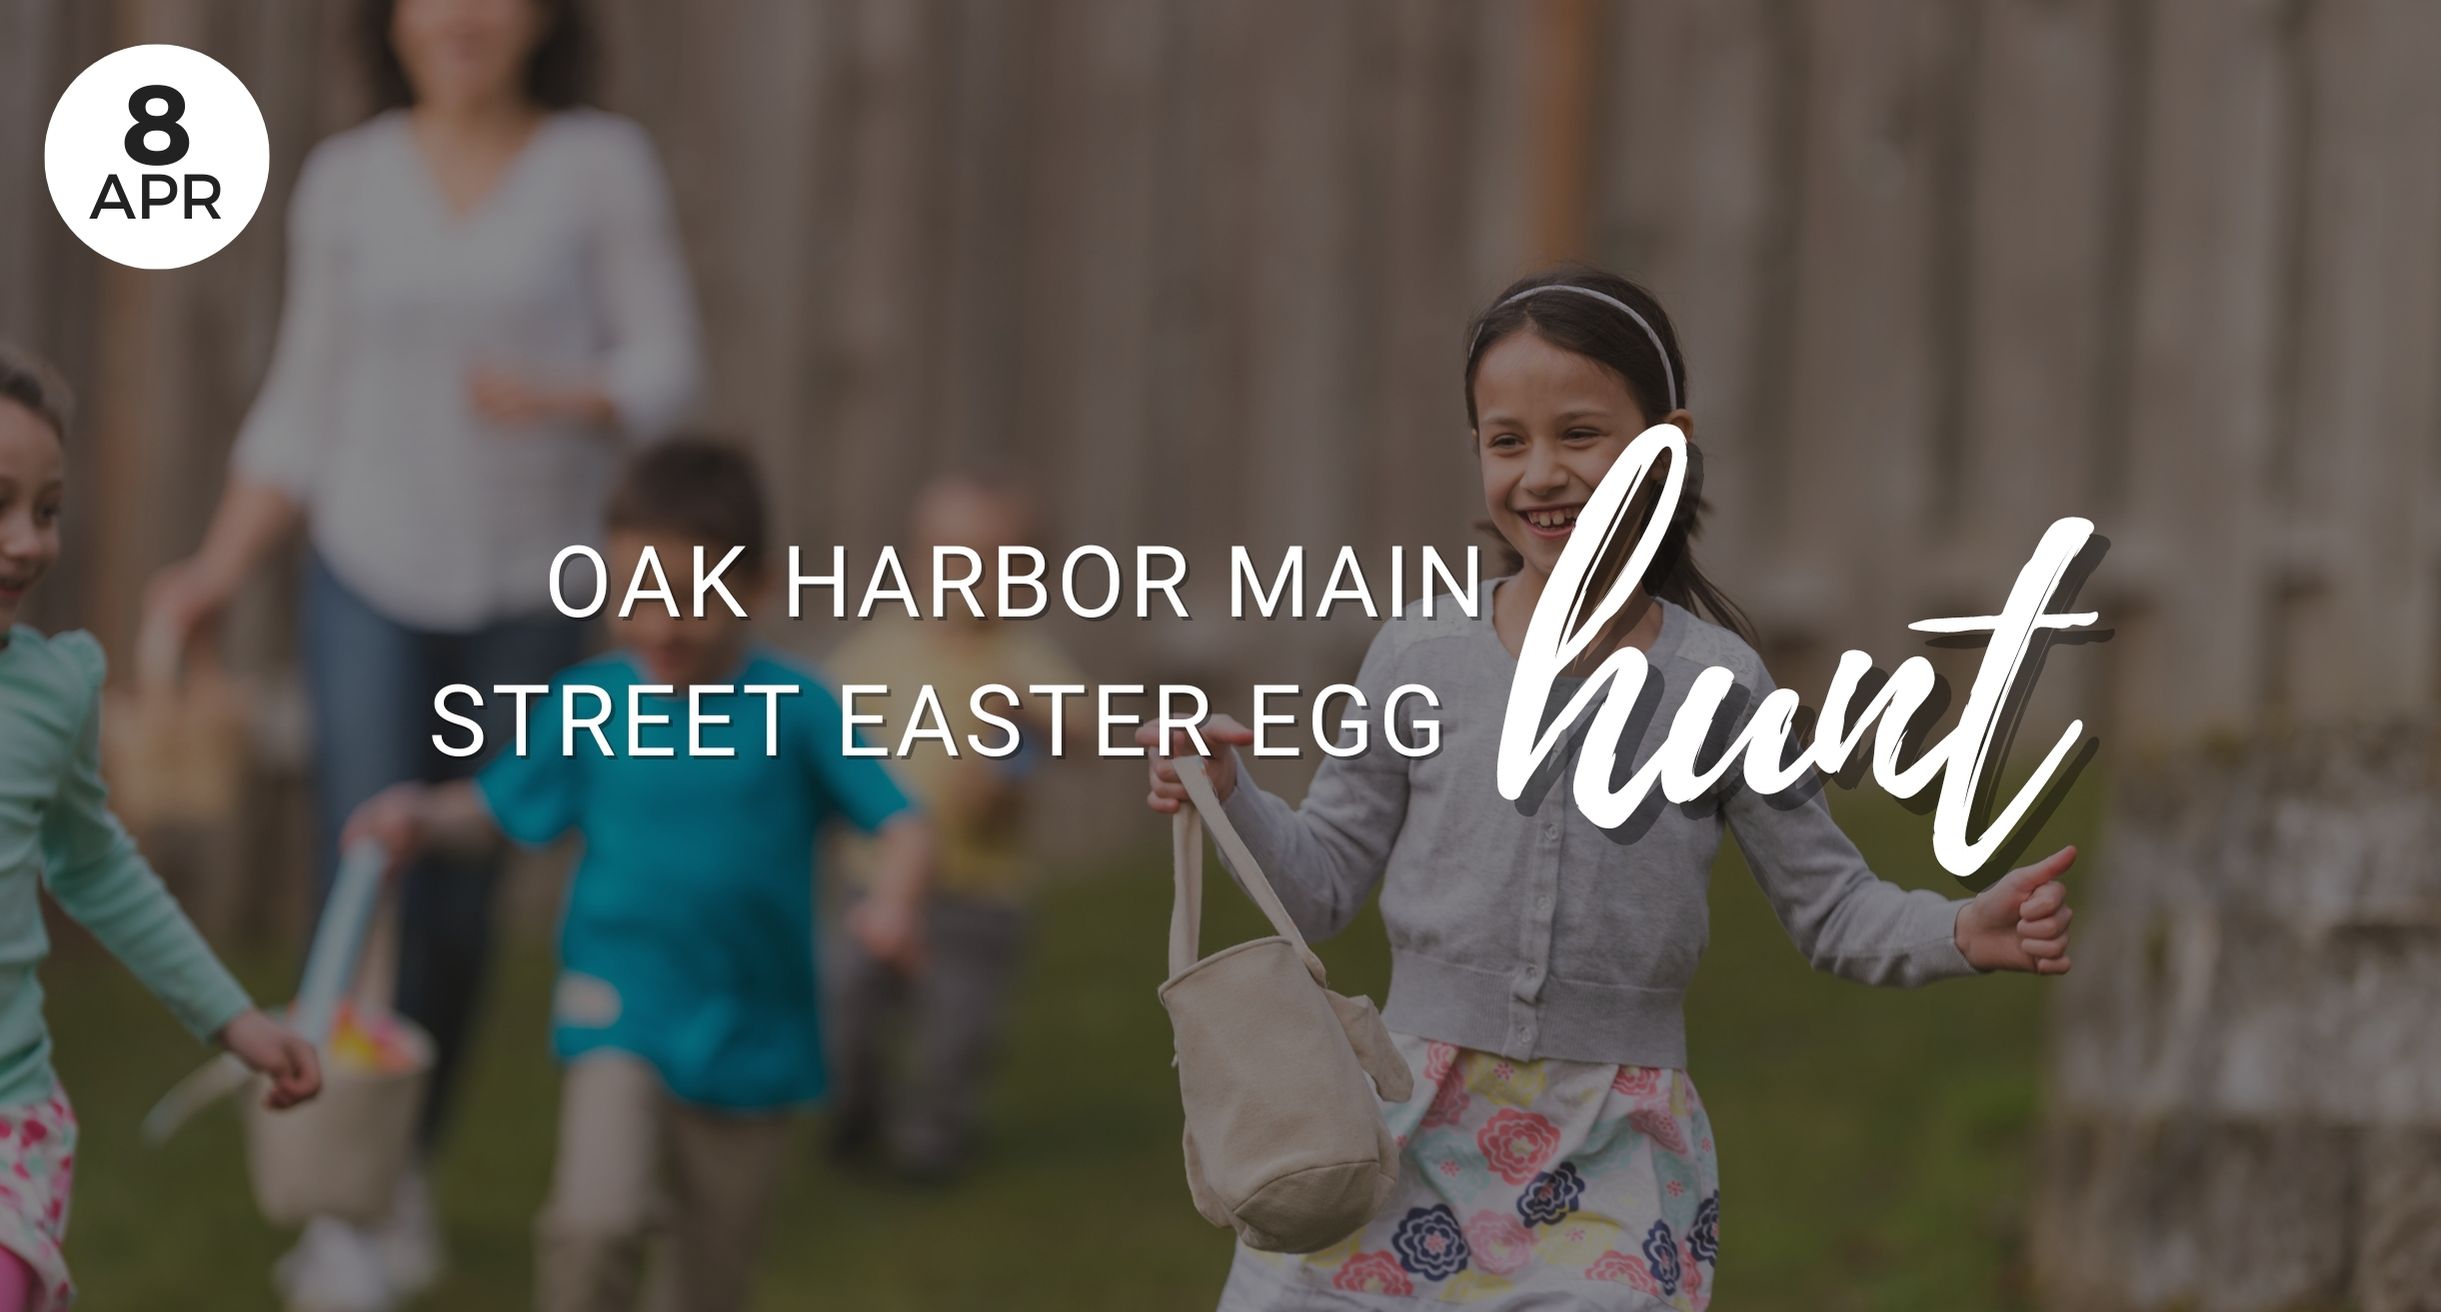 Oak Harbor Main Street, Easter Egg Hunt, Easter, Family, Kids, Community, Gathering, Celebrate